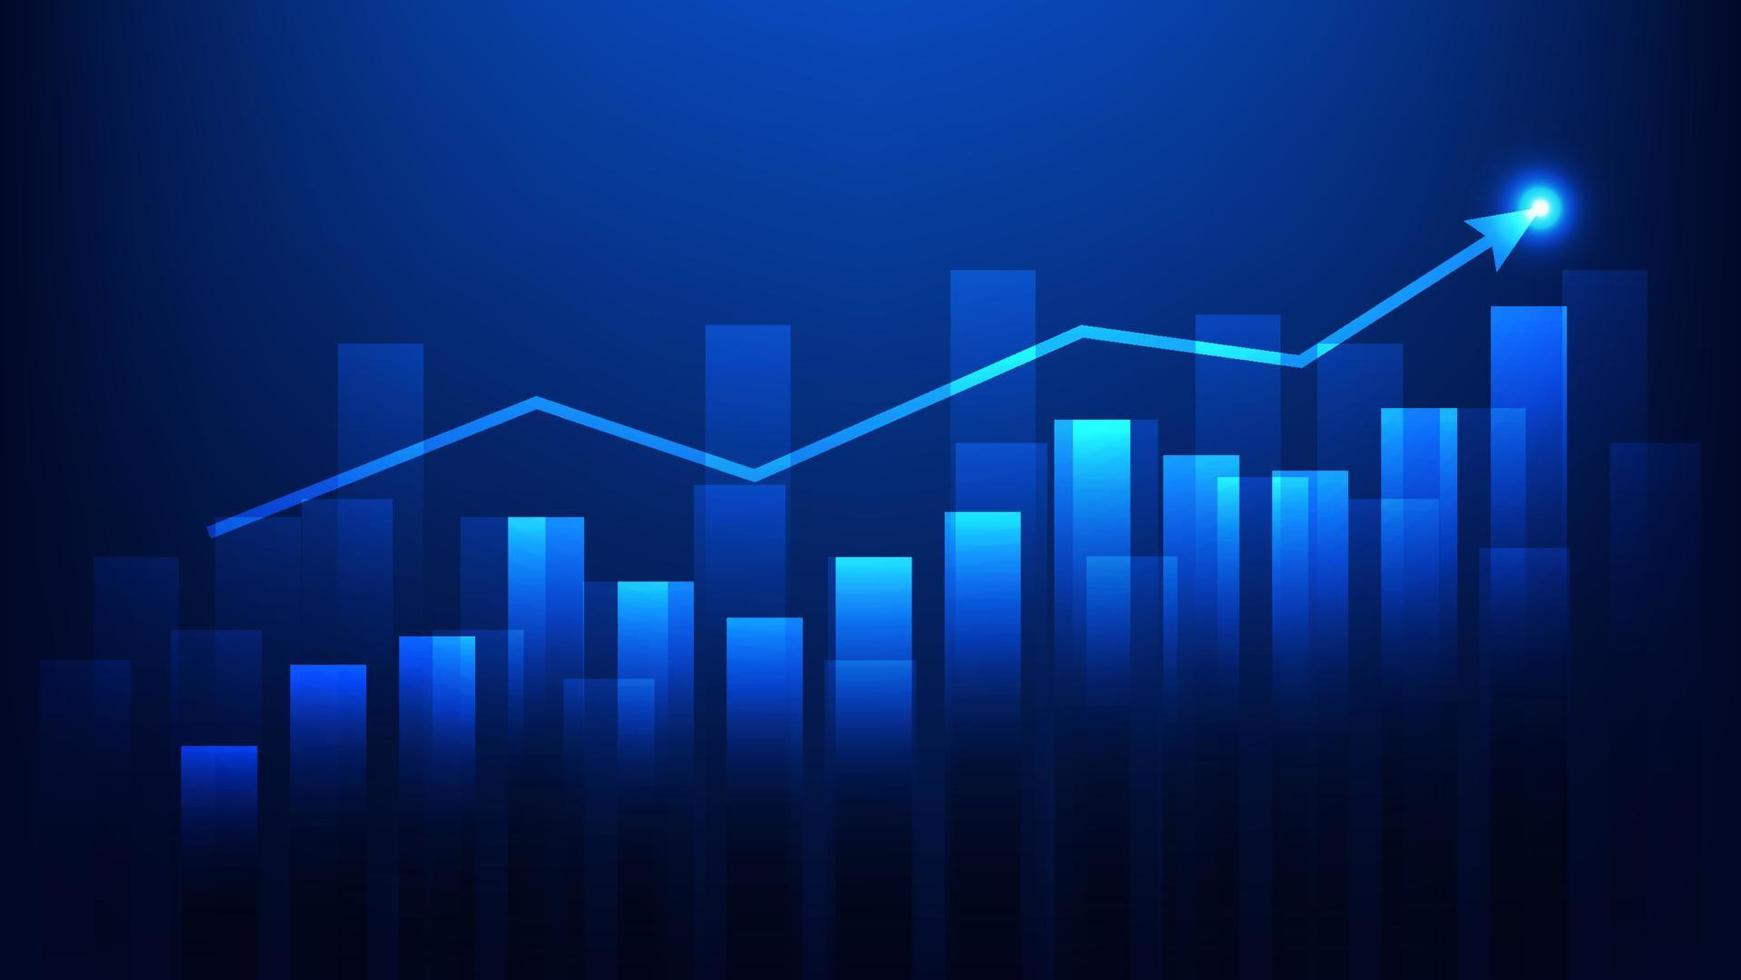 Balkendiagramm mit Aufwärtstrendpfeil zeigt Wachstum der Geschäftsleistung und Investitionsgewinn auf blauem Hintergrund vektor